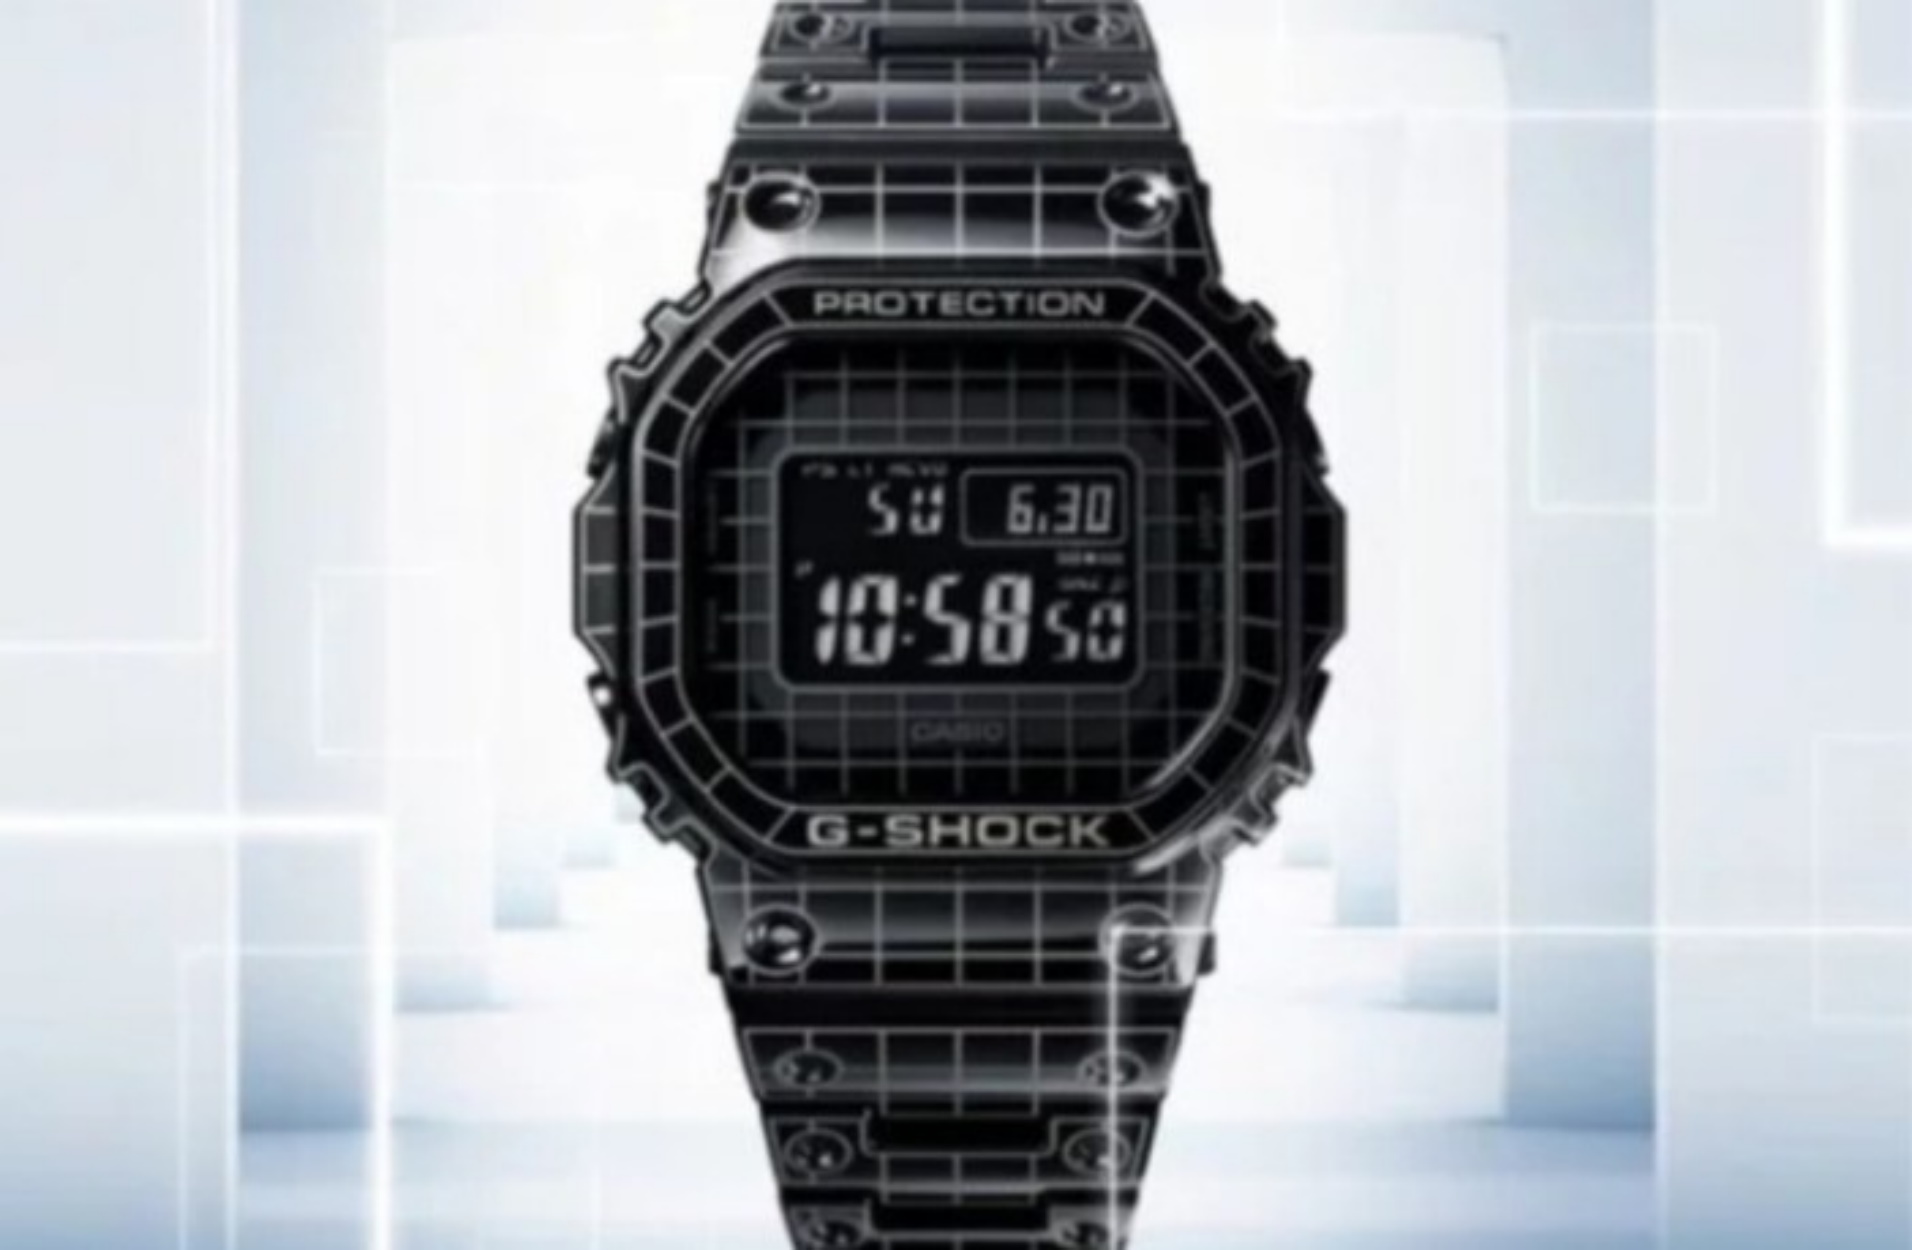 Το νέο ρολόι G-Shock της Casio είναι πολύ διαφορετικό απ’ ότι έχουμε συνηθίσει